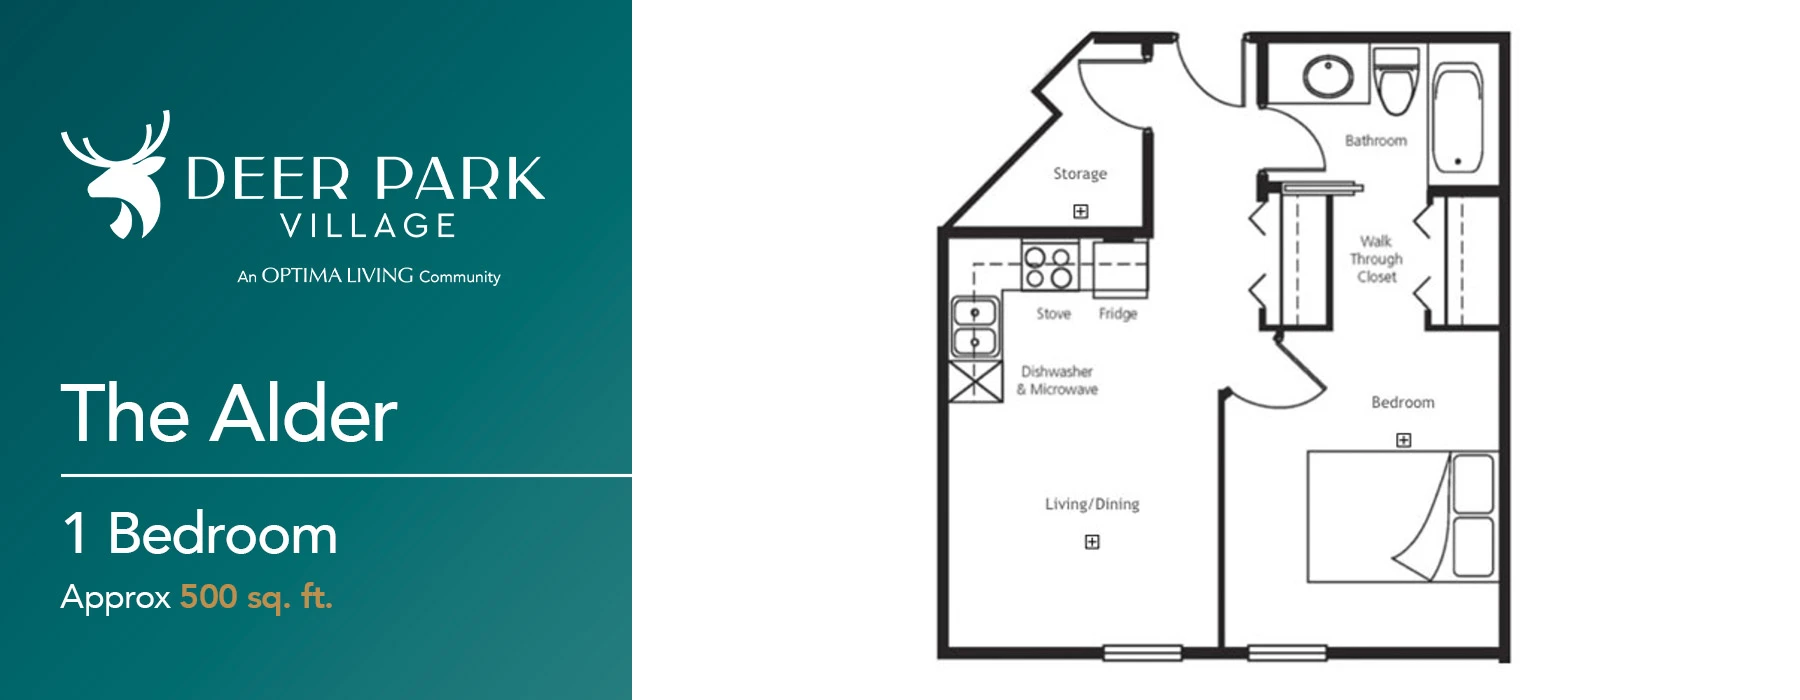 The Alder 1 Bedroom floorplan